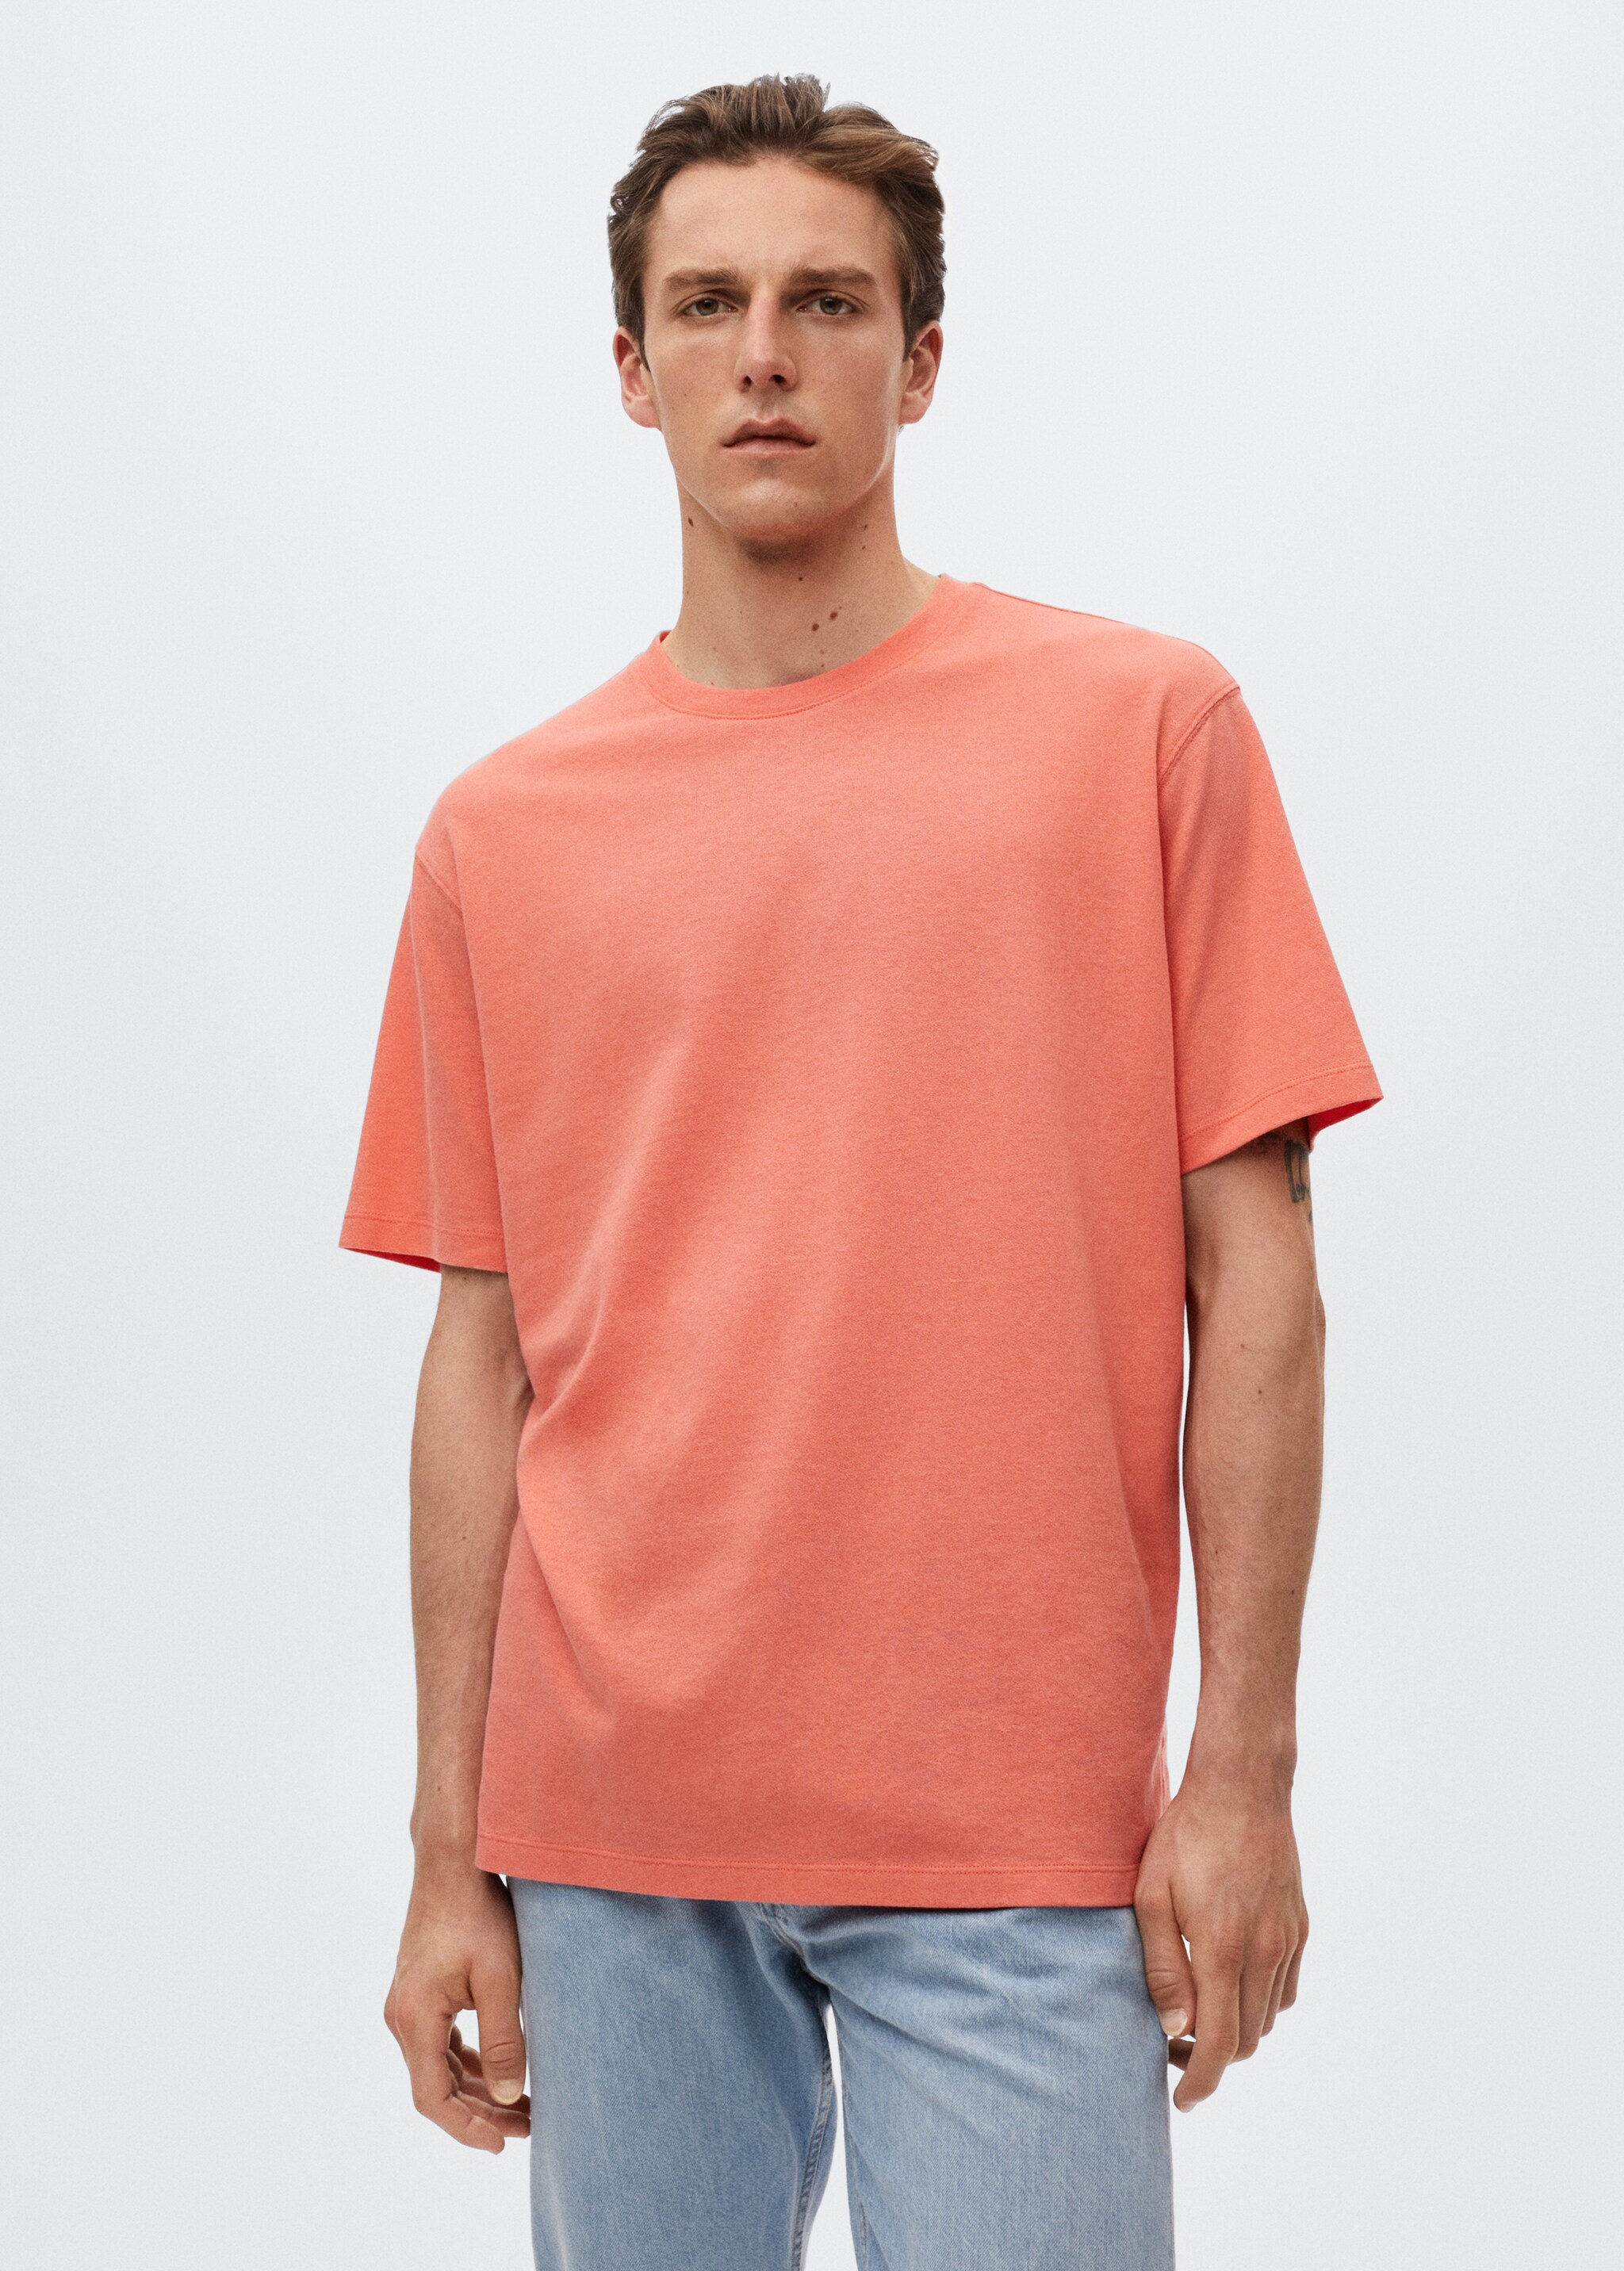 Camiseta algodón lino - Plano medio